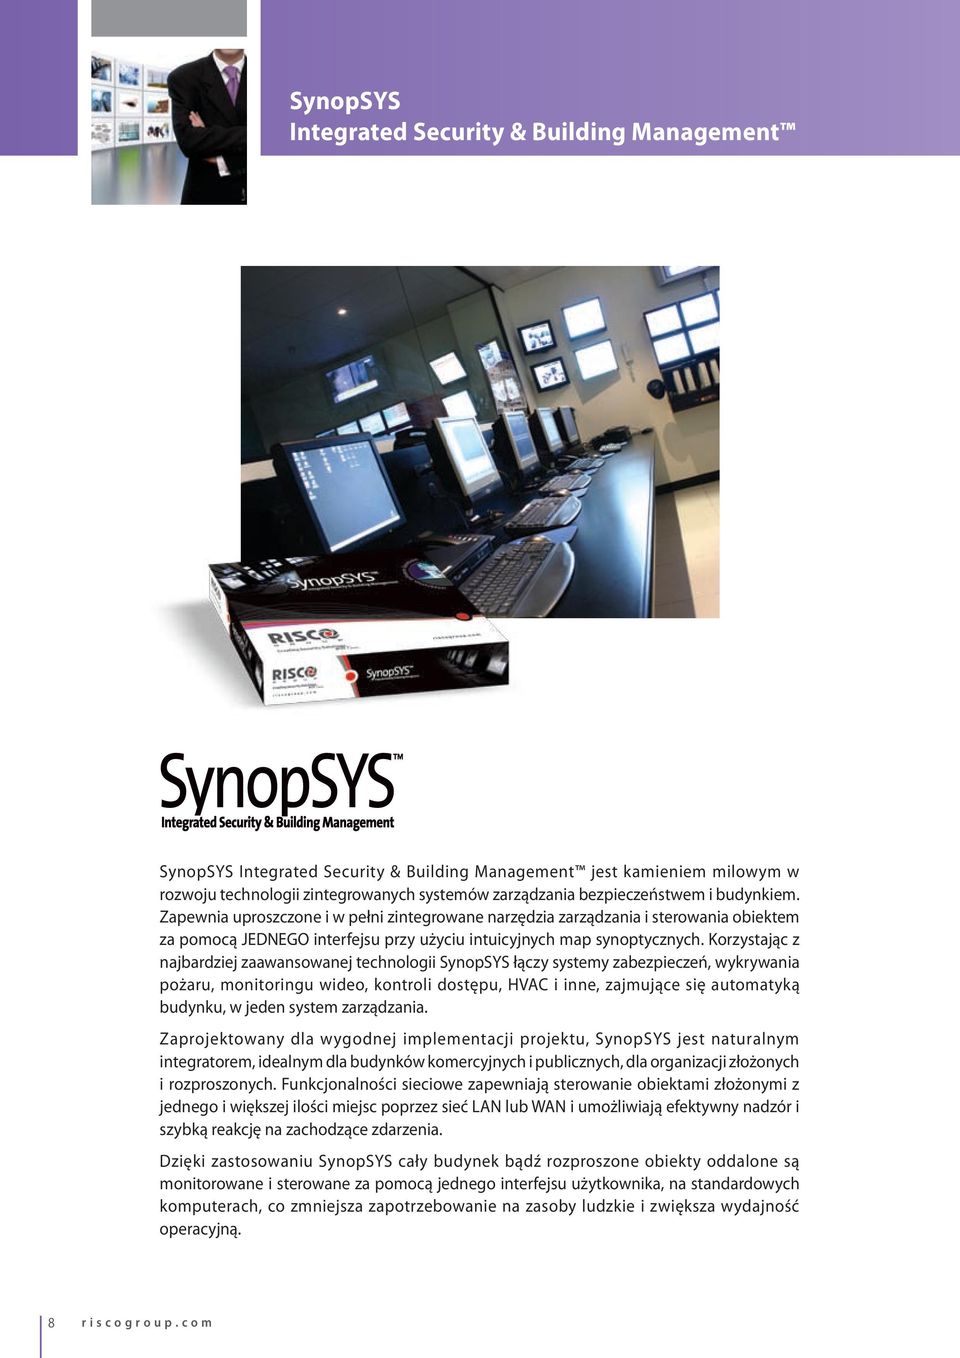 Korzystając z najbardziej zaawansowanej technologii SynopSYS łączy systemy zabezpieczeń, wykrywania pożaru, monitoringu wideo, kontroli dostępu, HVAC i inne, zajmujące się automatyką budynku, w jeden